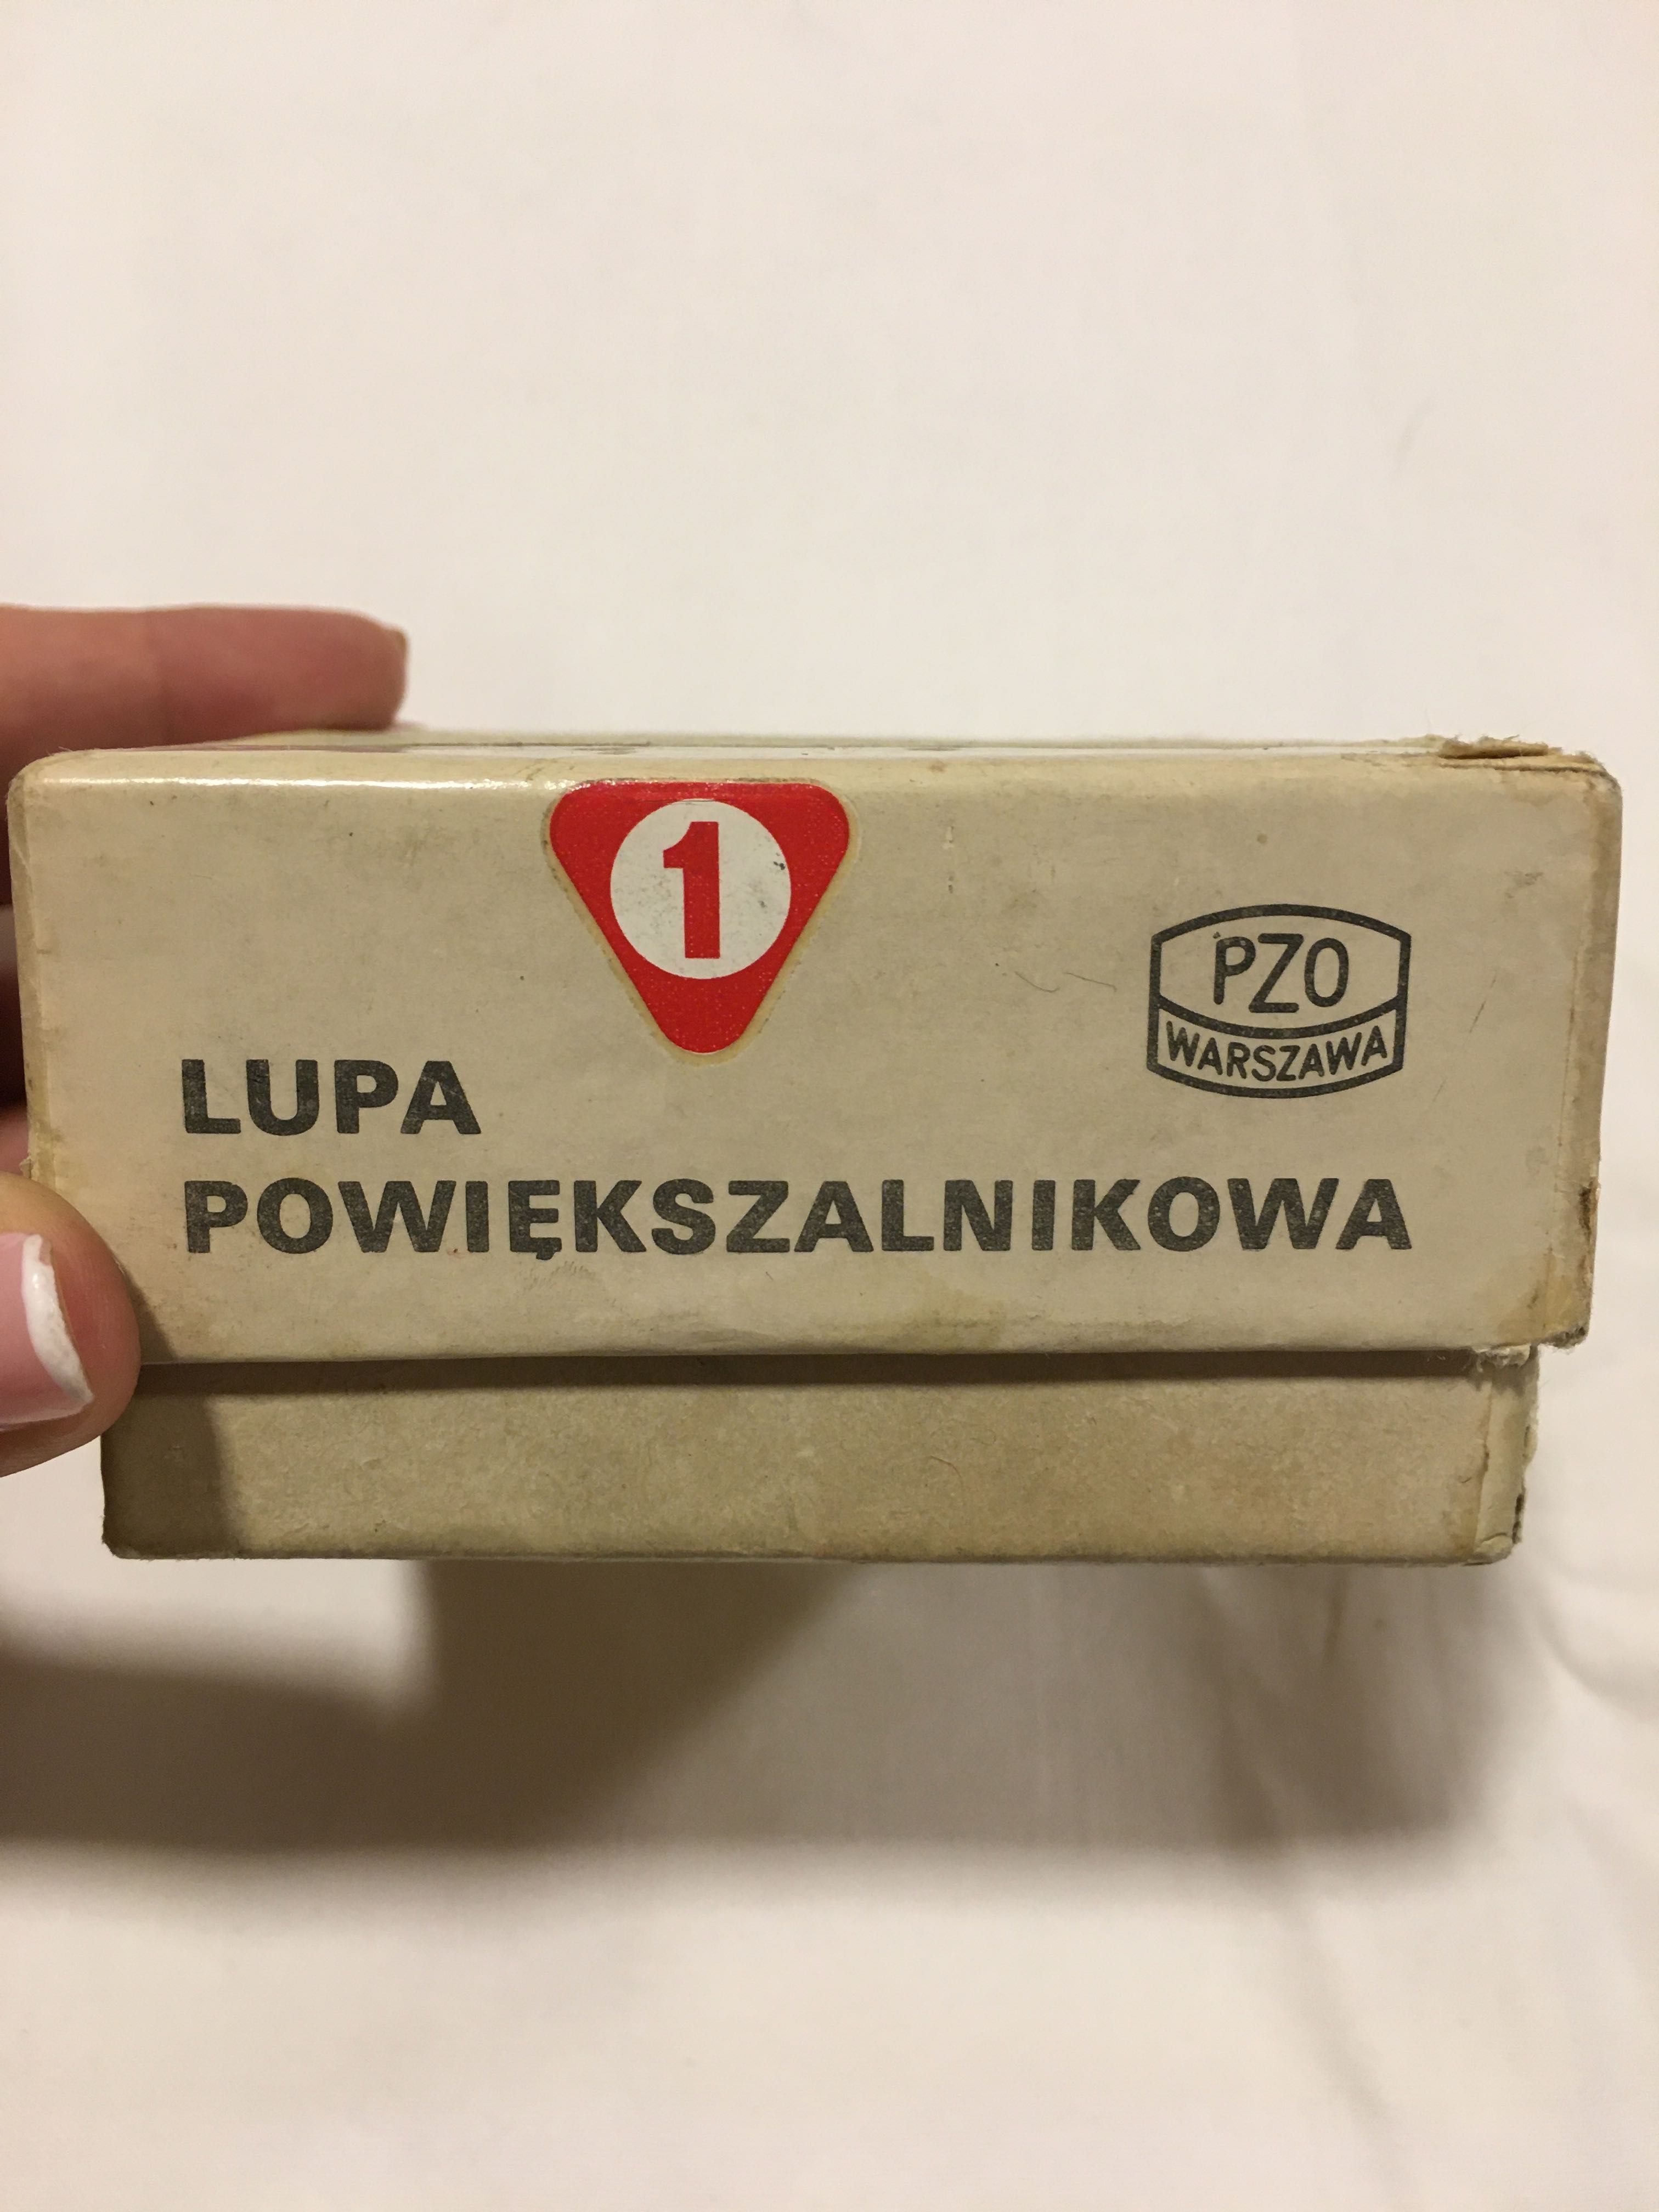 Obiektyw powiększalnikowy Mikar S 4,5/55 PRL lupa PZO